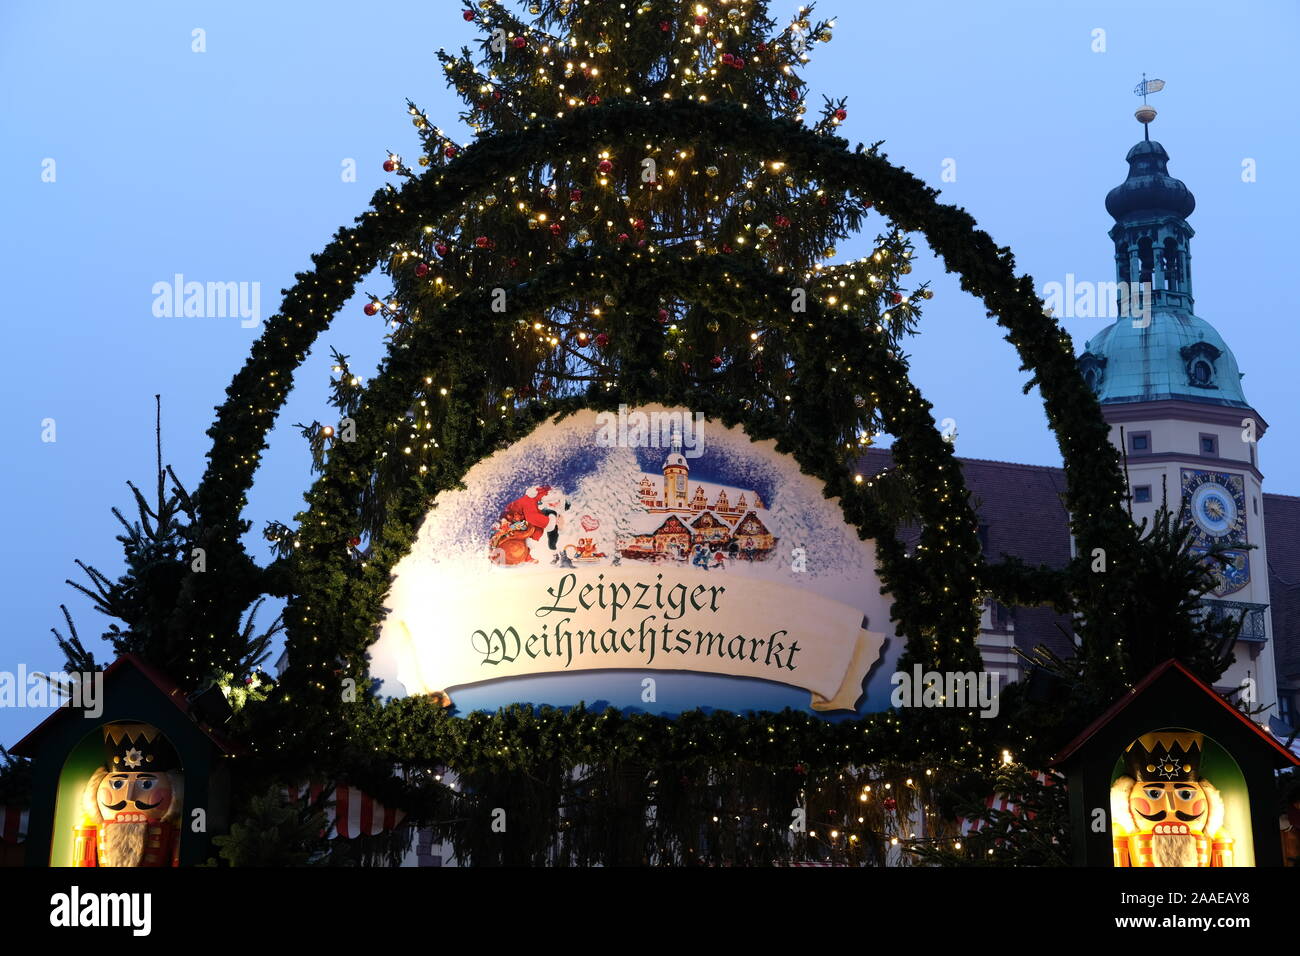 Il 07 gennaio 2016, in Sassonia, Lipsia: le lampade sull'albero di Natale e le insegne di Leipzig mercatino di Natale si accendono durante un funzionamento di prova. Il mercato è aperto dal 26.11. al 23.12.2019. Foto: Sebastian Willnow/dpa-Zentralbild/dpa Foto Stock